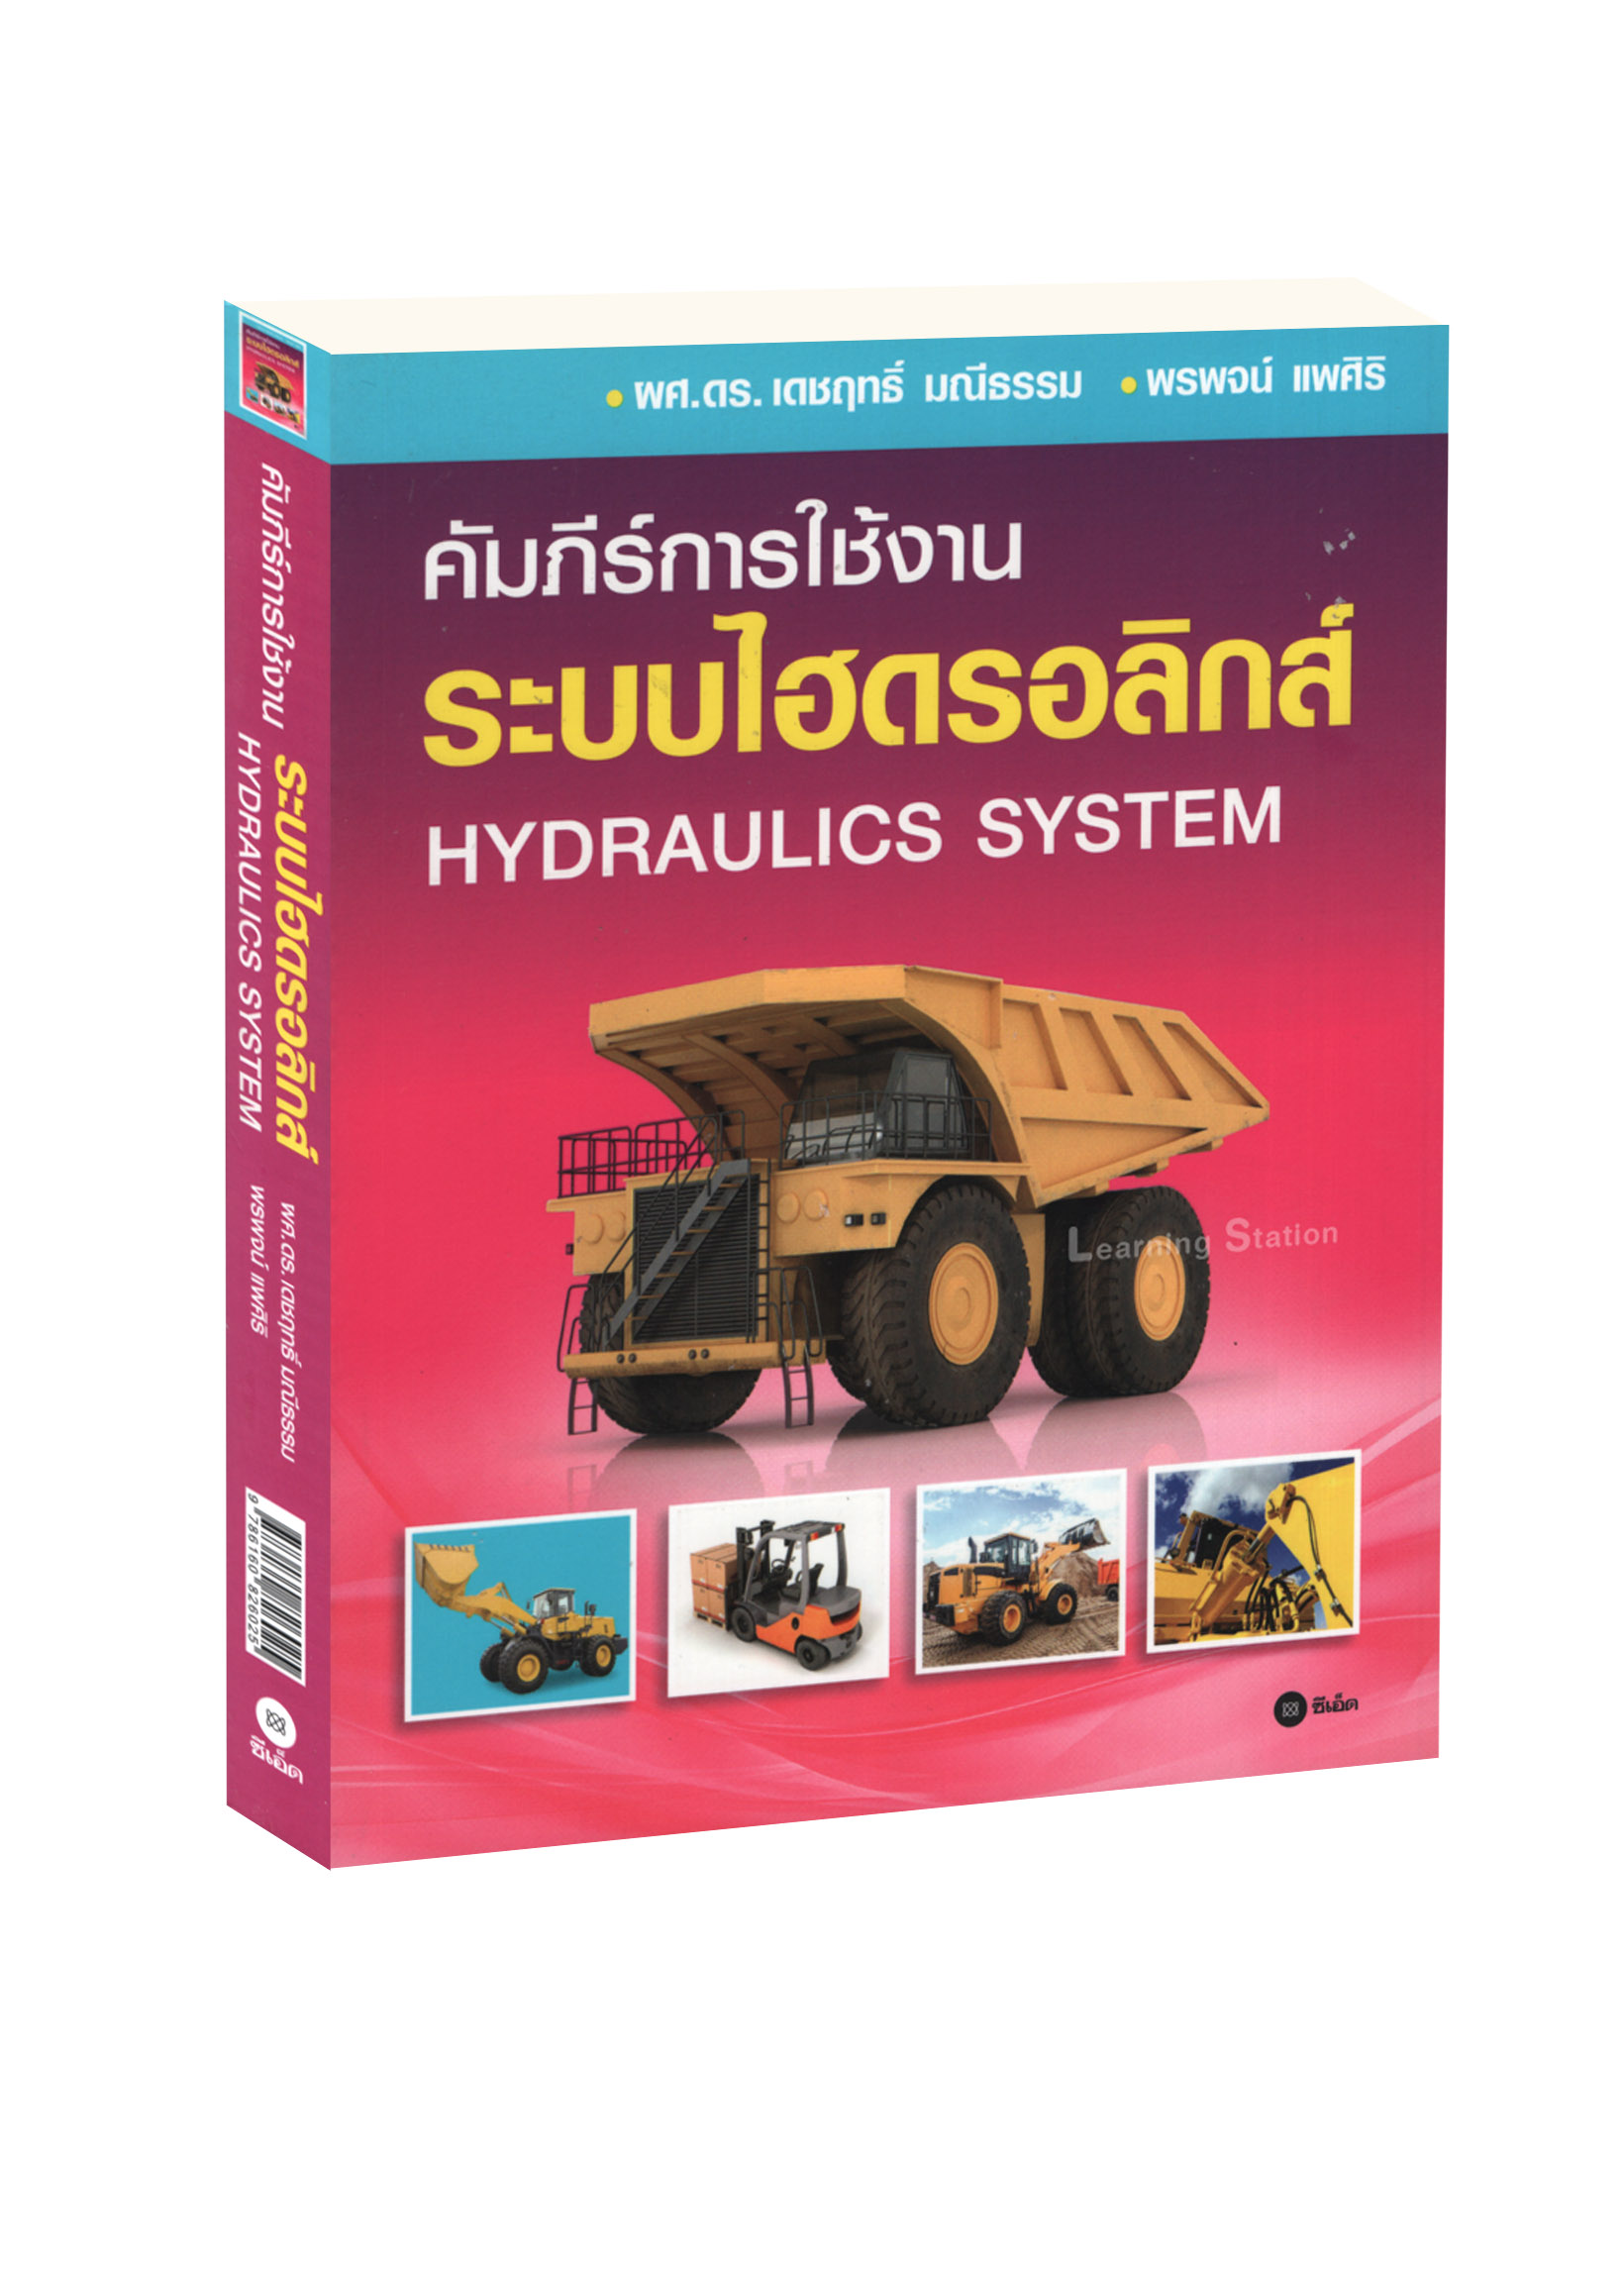 คัมภีร์การใช้งาน ระบบไฮดรอลิกส์ : Hydraulics System